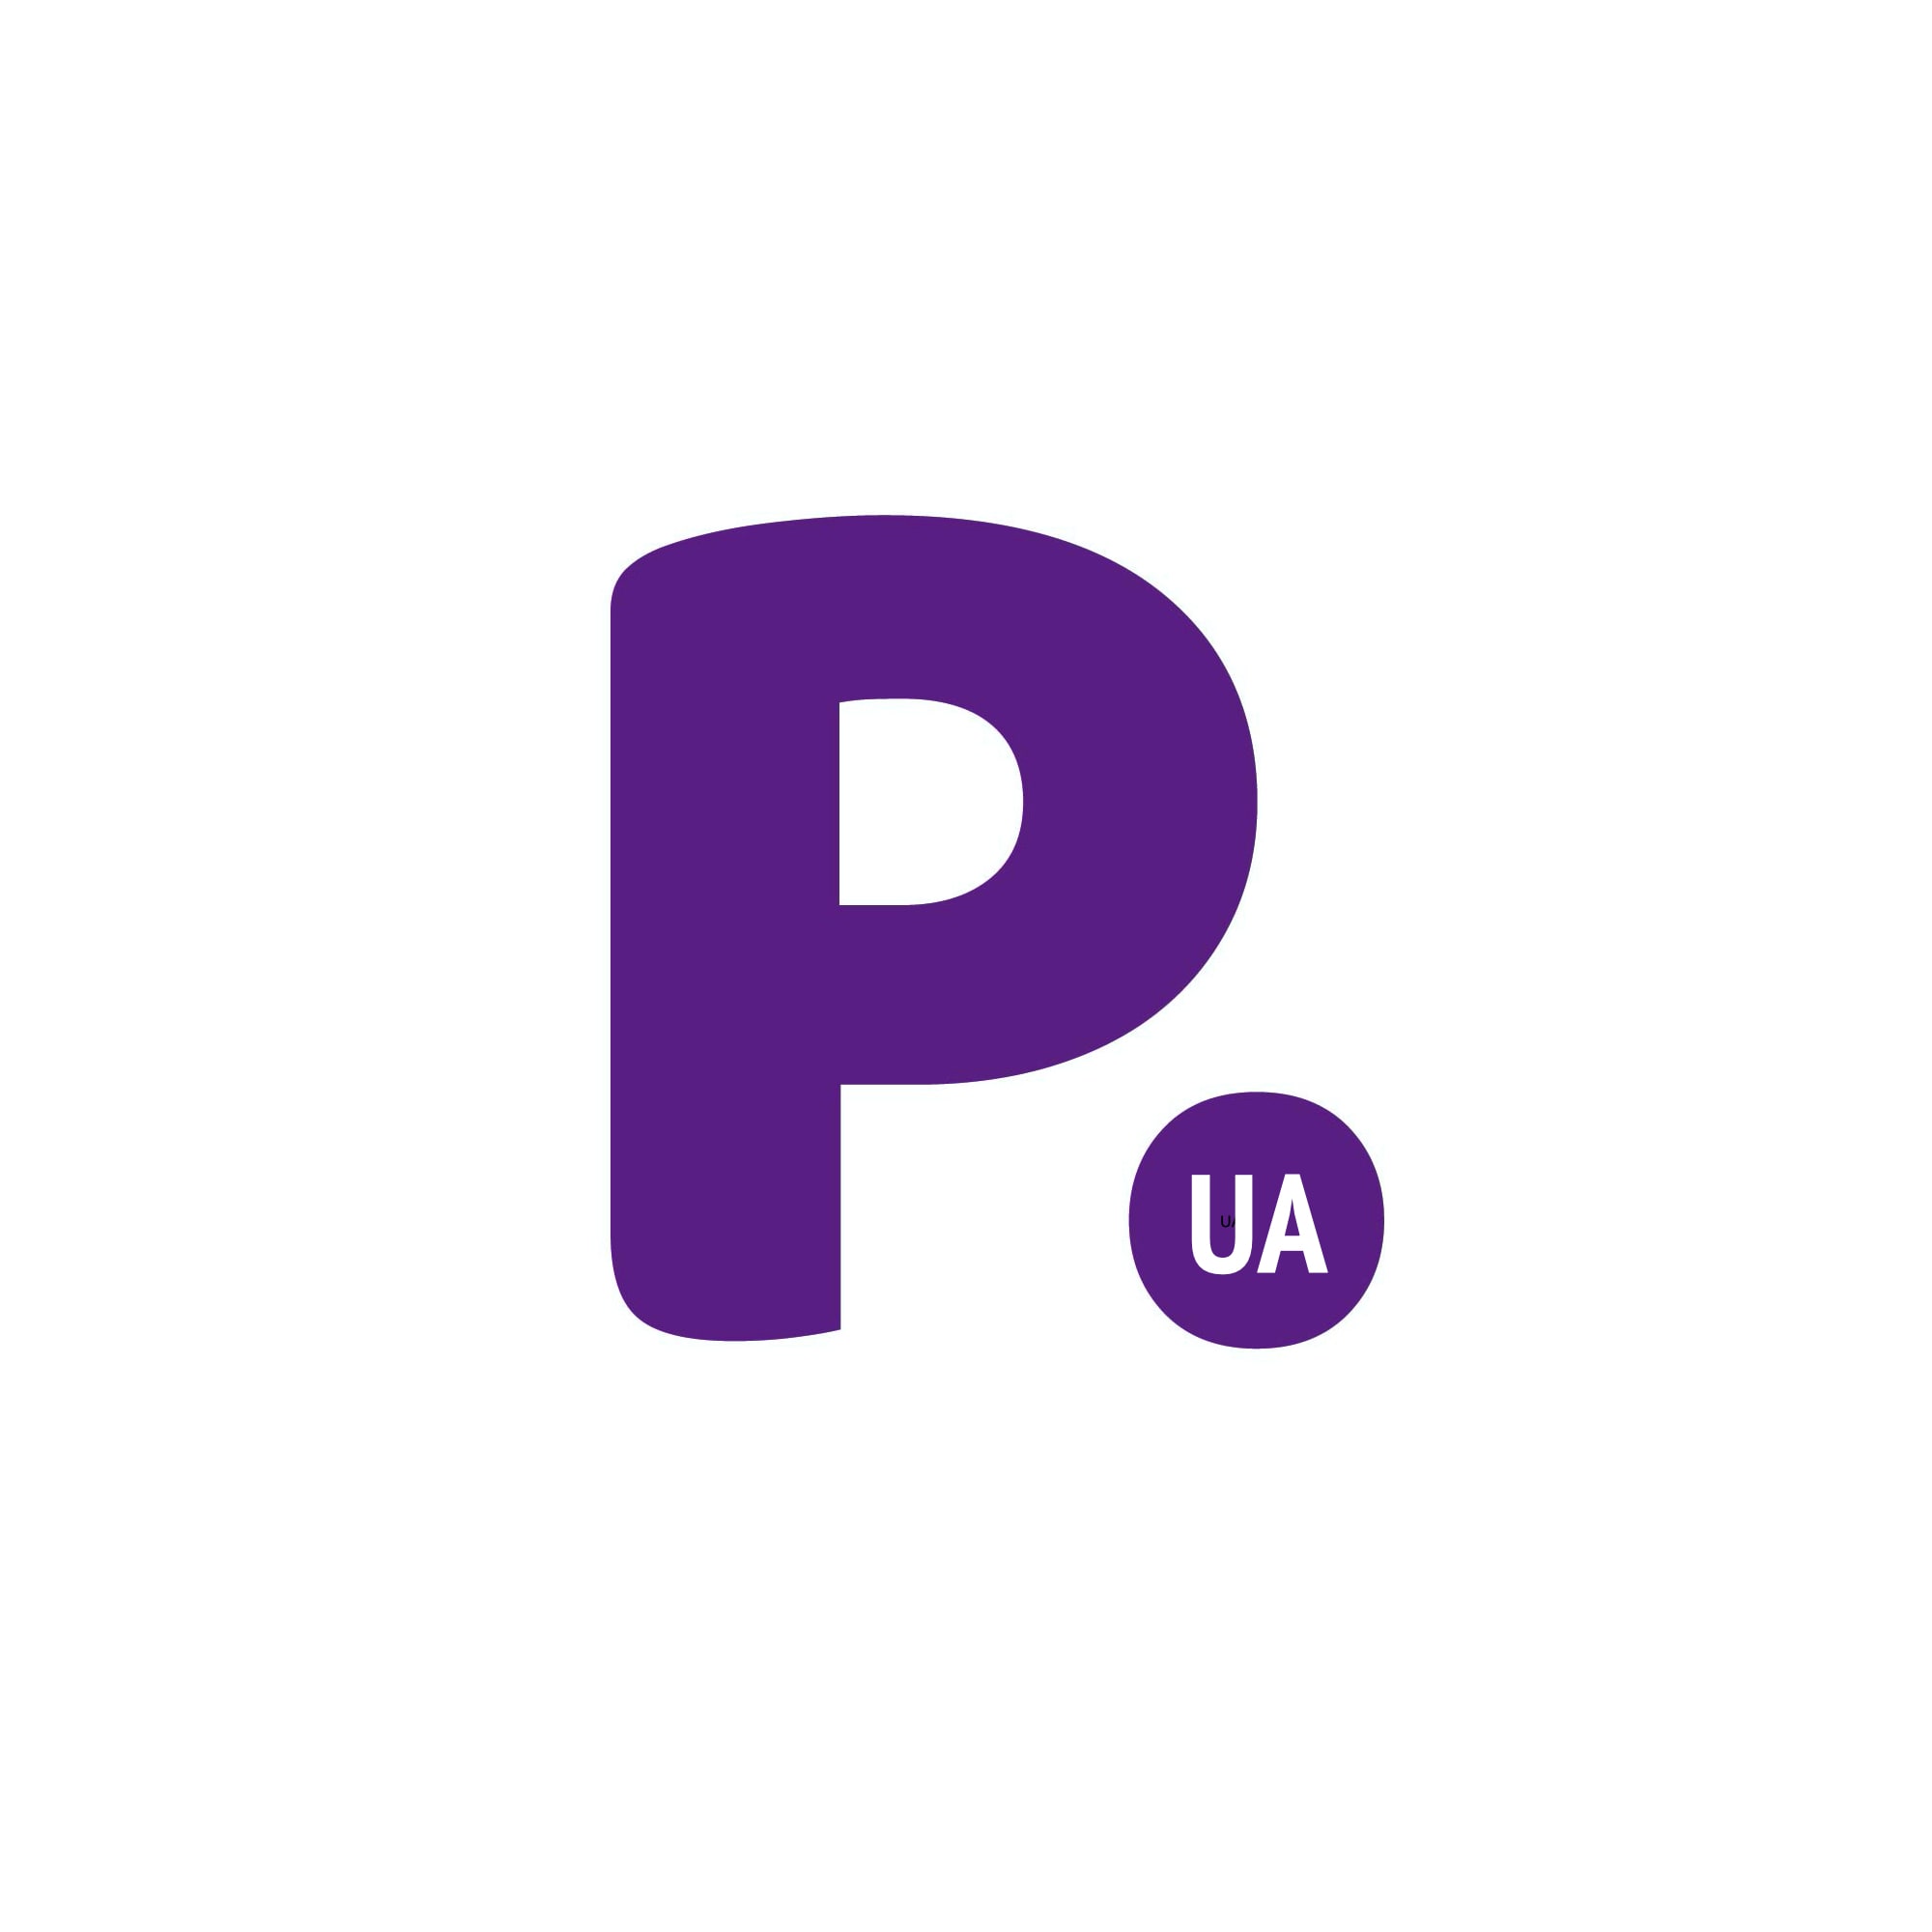 P.ua - BUYnJOY - Правильный интернет магазин